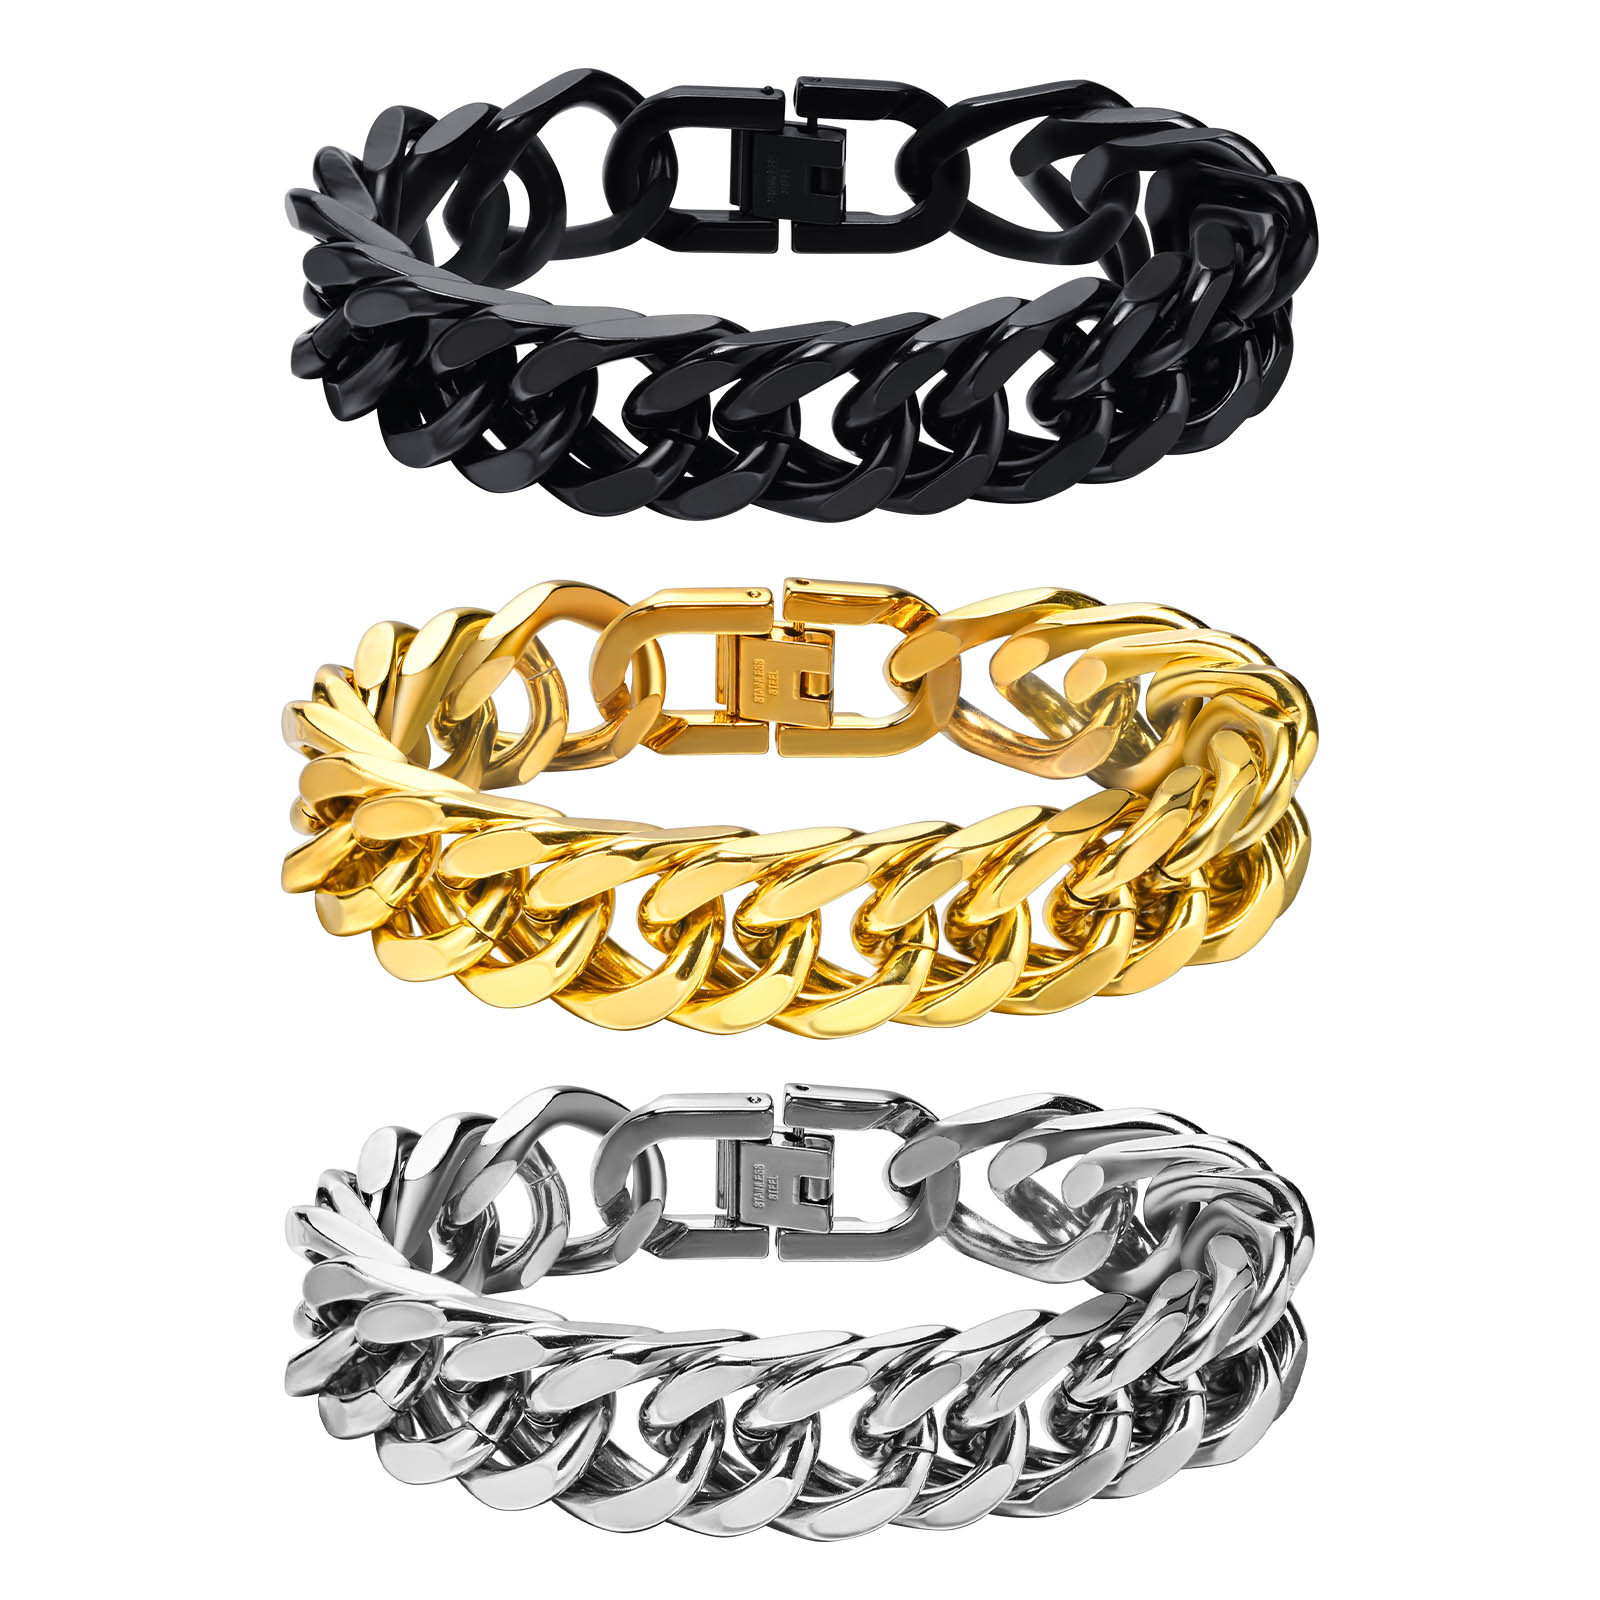 6:Steel chain width 15MM; bracelet total length 21.5 cm